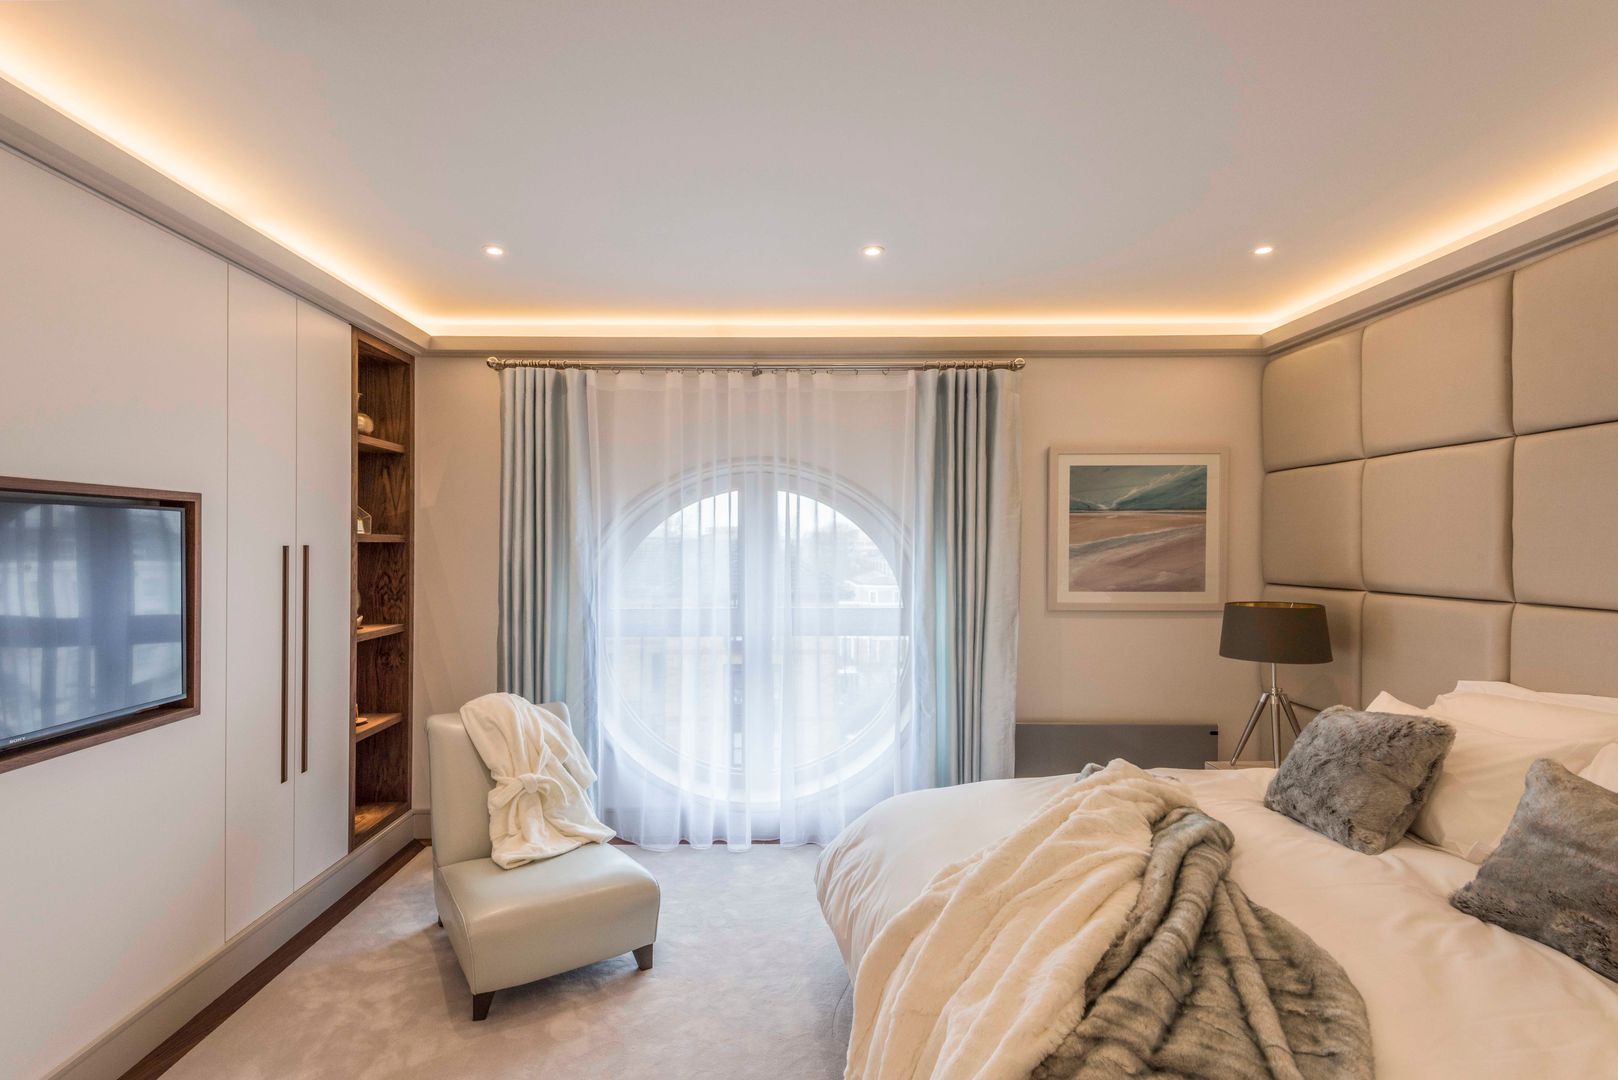 Bedroom Prestige Architects By Marco Braghiroli Phòng ngủ phong cách hiện đại bespoke,Bedroom,bedroom,lighting